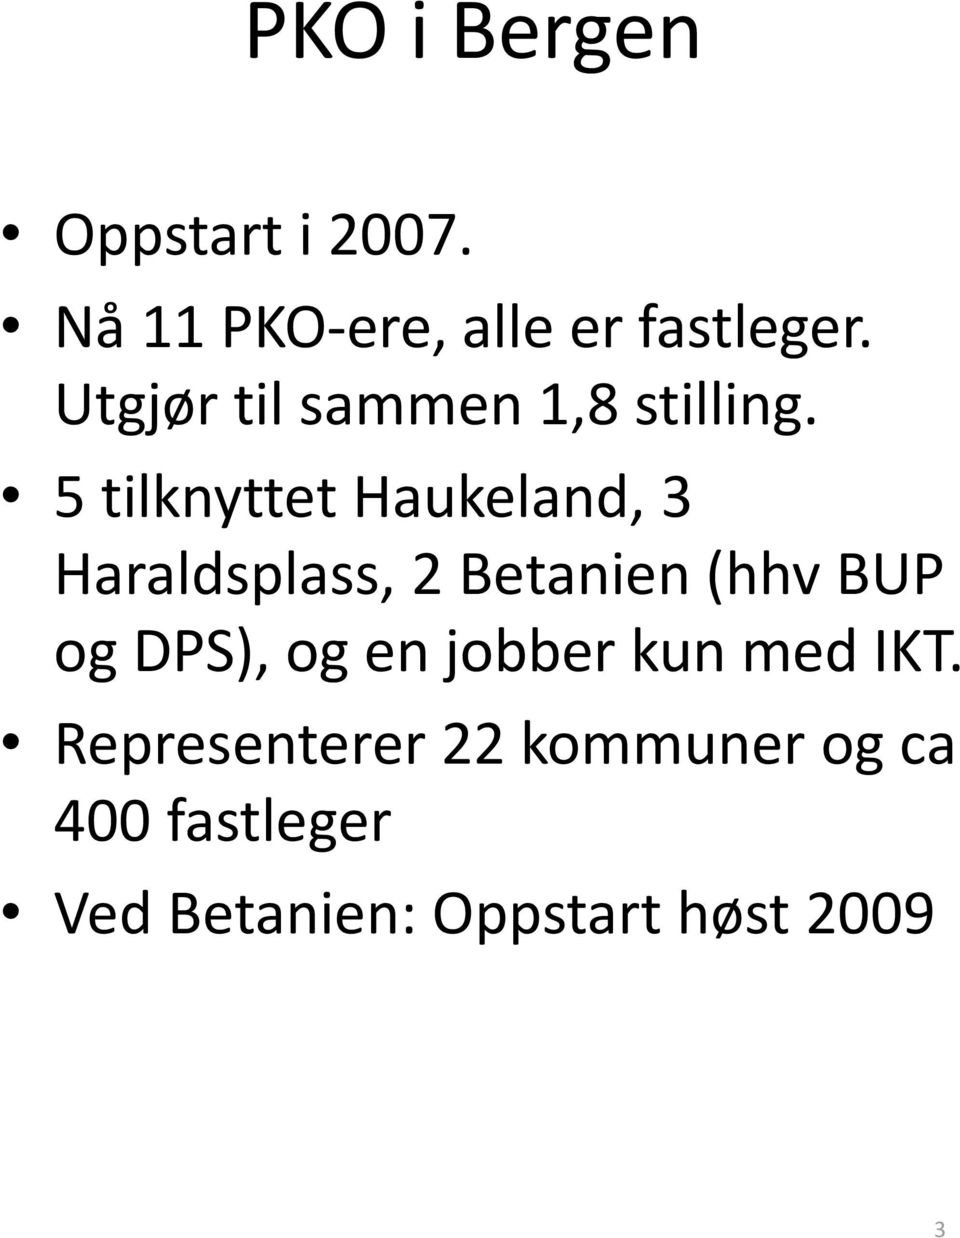 5 tilknyttet Haukeland, 3 Haraldsplass, 2 Betanien (hhv BUP og